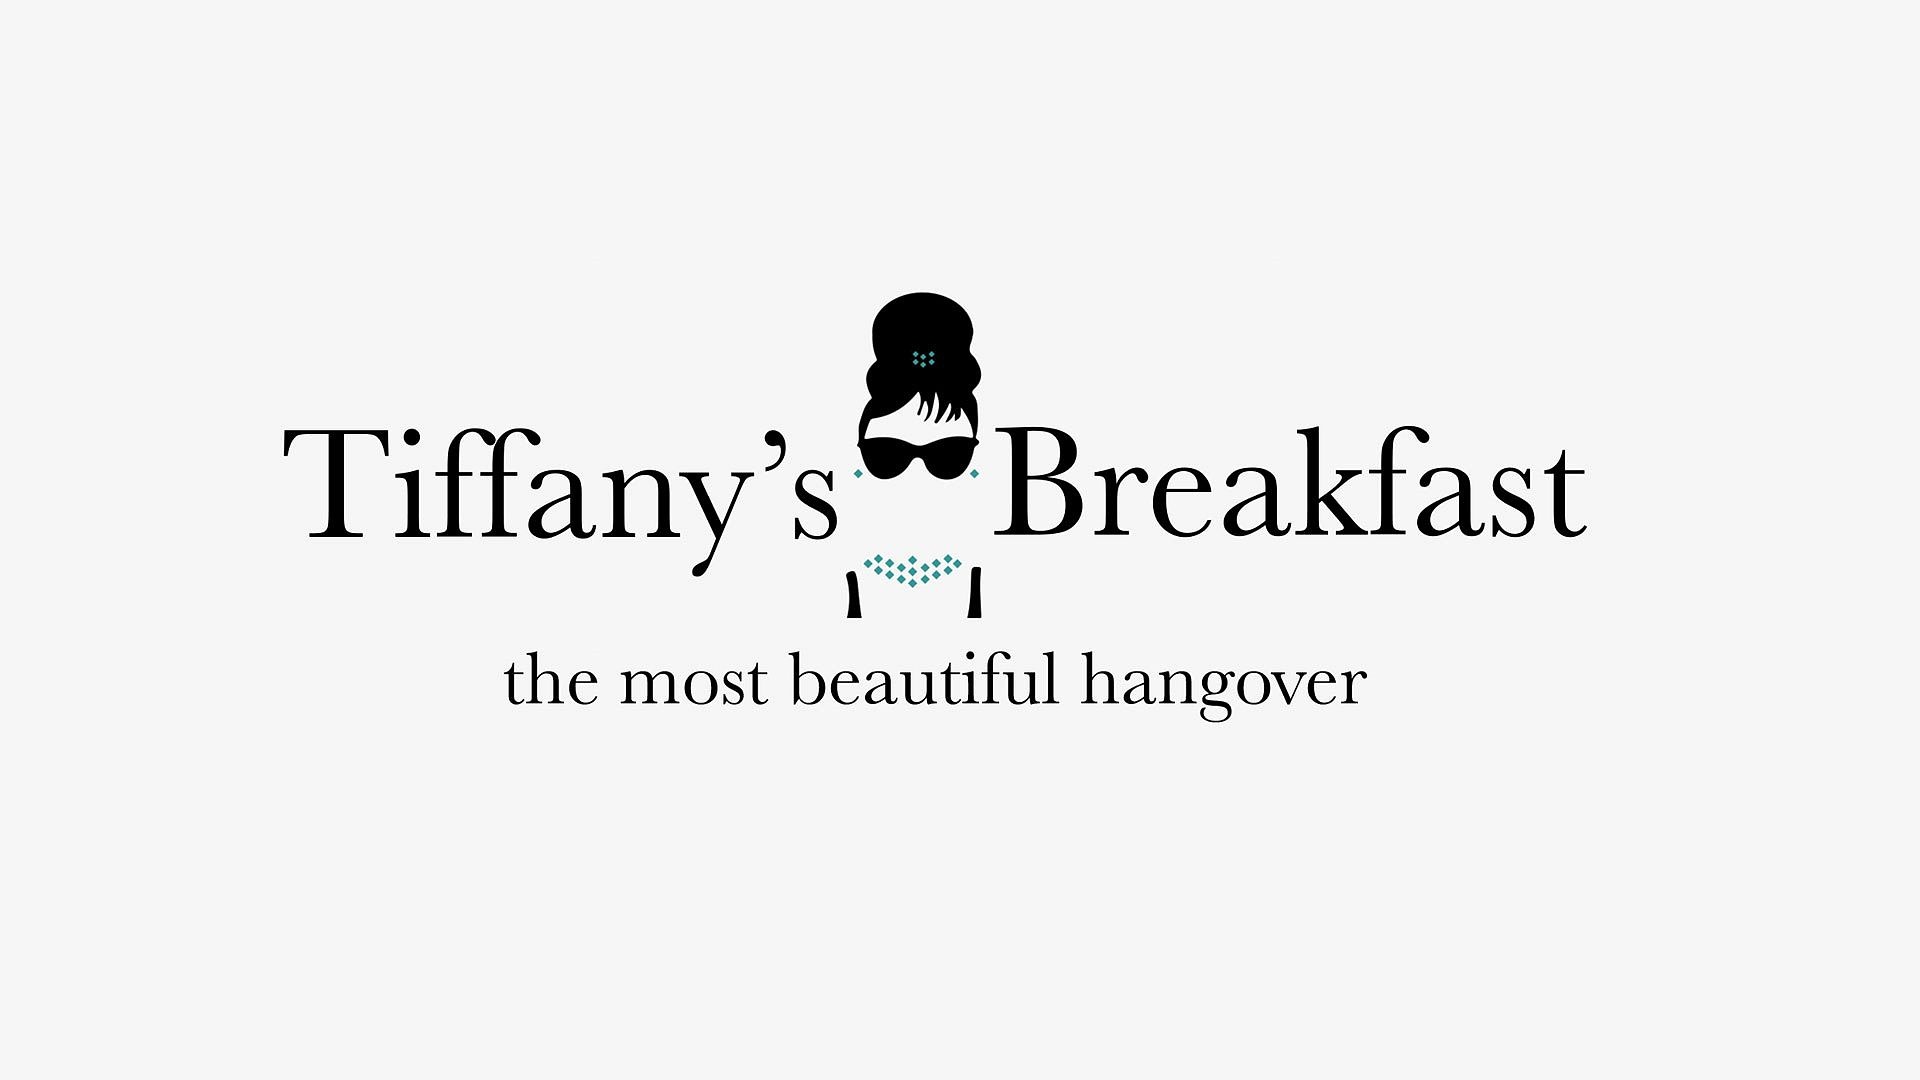 Breakfast at Tiffany's, Tiffany's jewelry, Classic film, Iconic breakfast, 1920x1080 Full HD Desktop